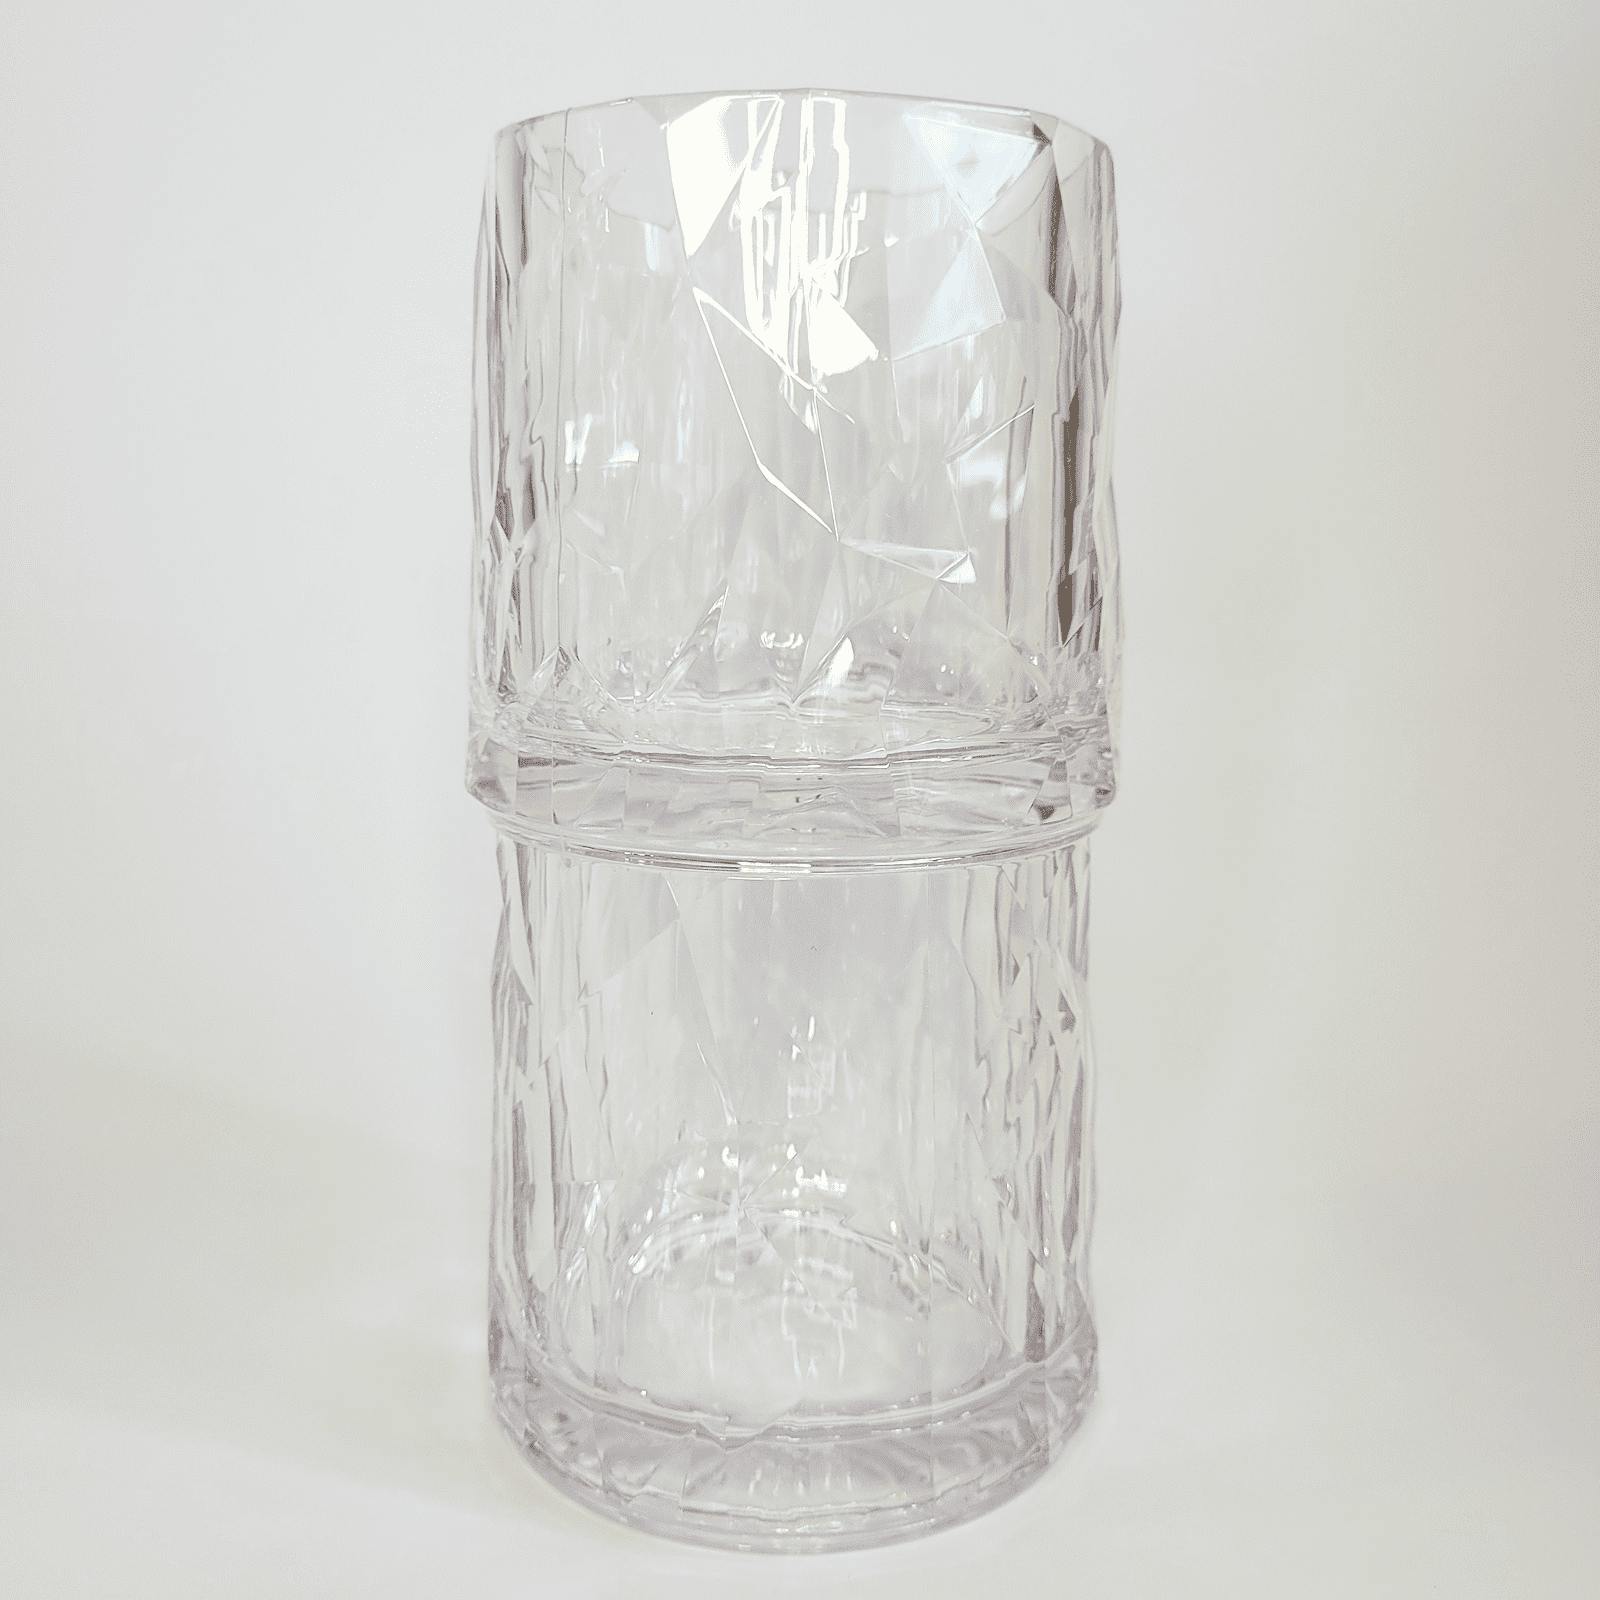 Whiskeyglas av okrossbar återvunnen termoplast